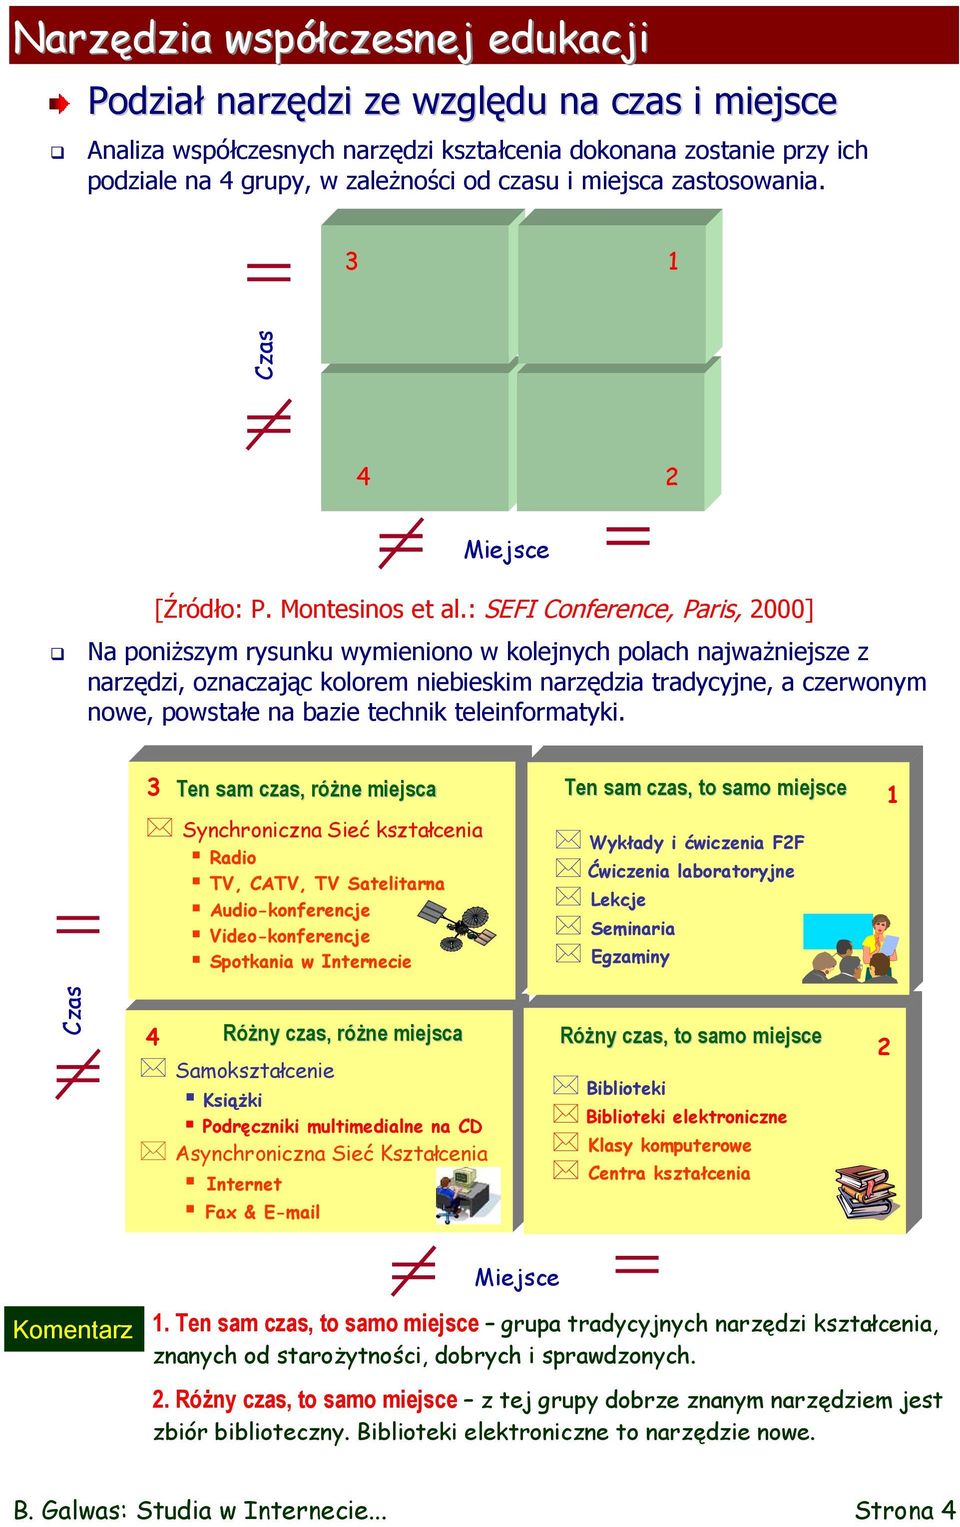 : SEFI Conference, Paris, 2000] Na poniższym rysunku wymieniono w kolejnych polach najważniejsze z narzędzi, oznaczając kolorem niebieskim narzędzia tradycyjne, a czerwonym nowe, powstałe na bazie